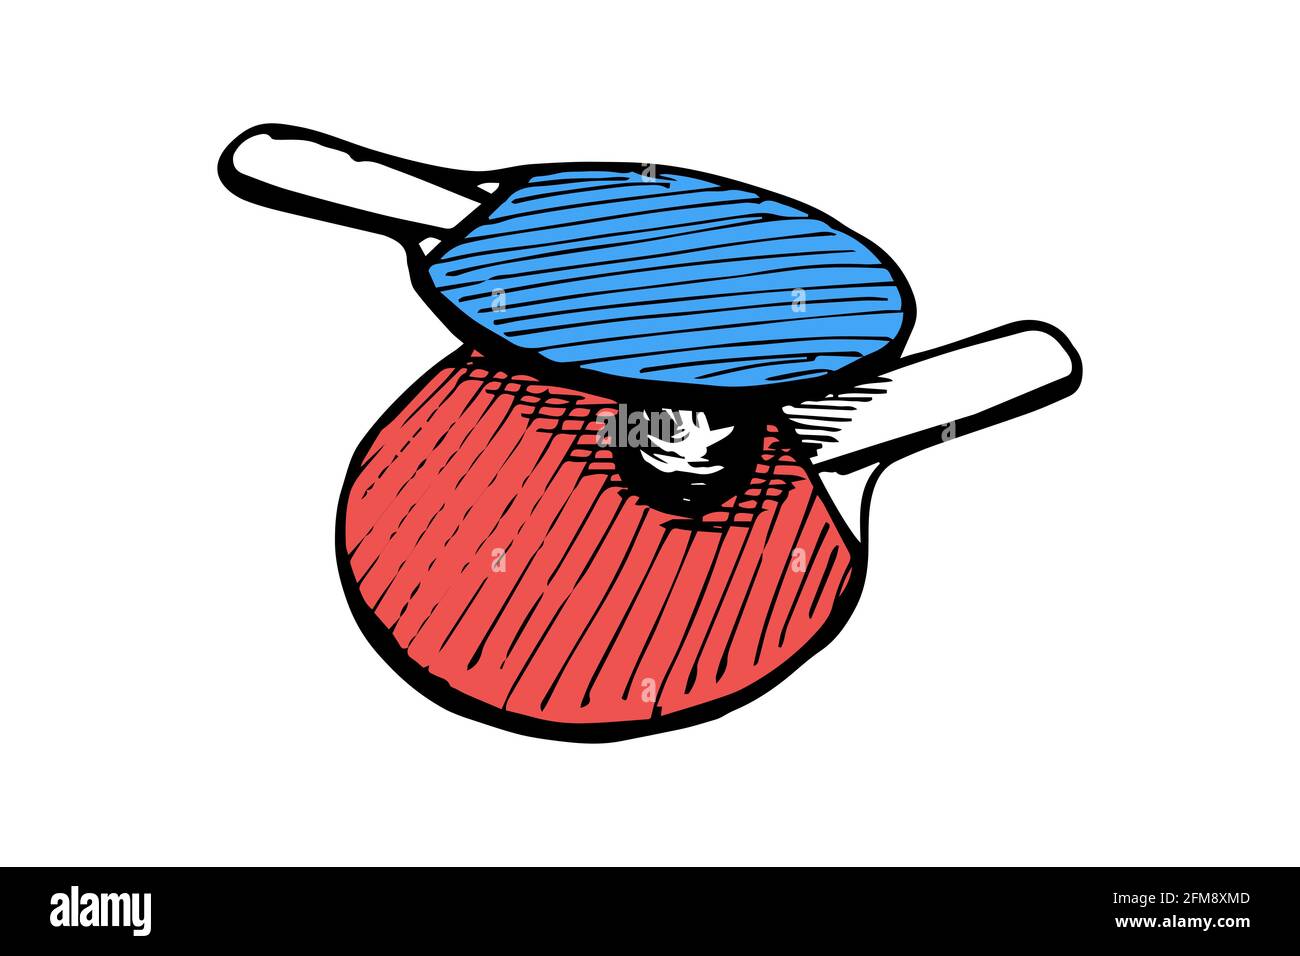 Racchette blu e rosse da ping-pong e disegno a forma di palla a mano.  Attrezzatura da ping-pong. Concetto di logo delle pagaie del gioco del ping  pong. Inchiostro nero vettoriale immagine isolata